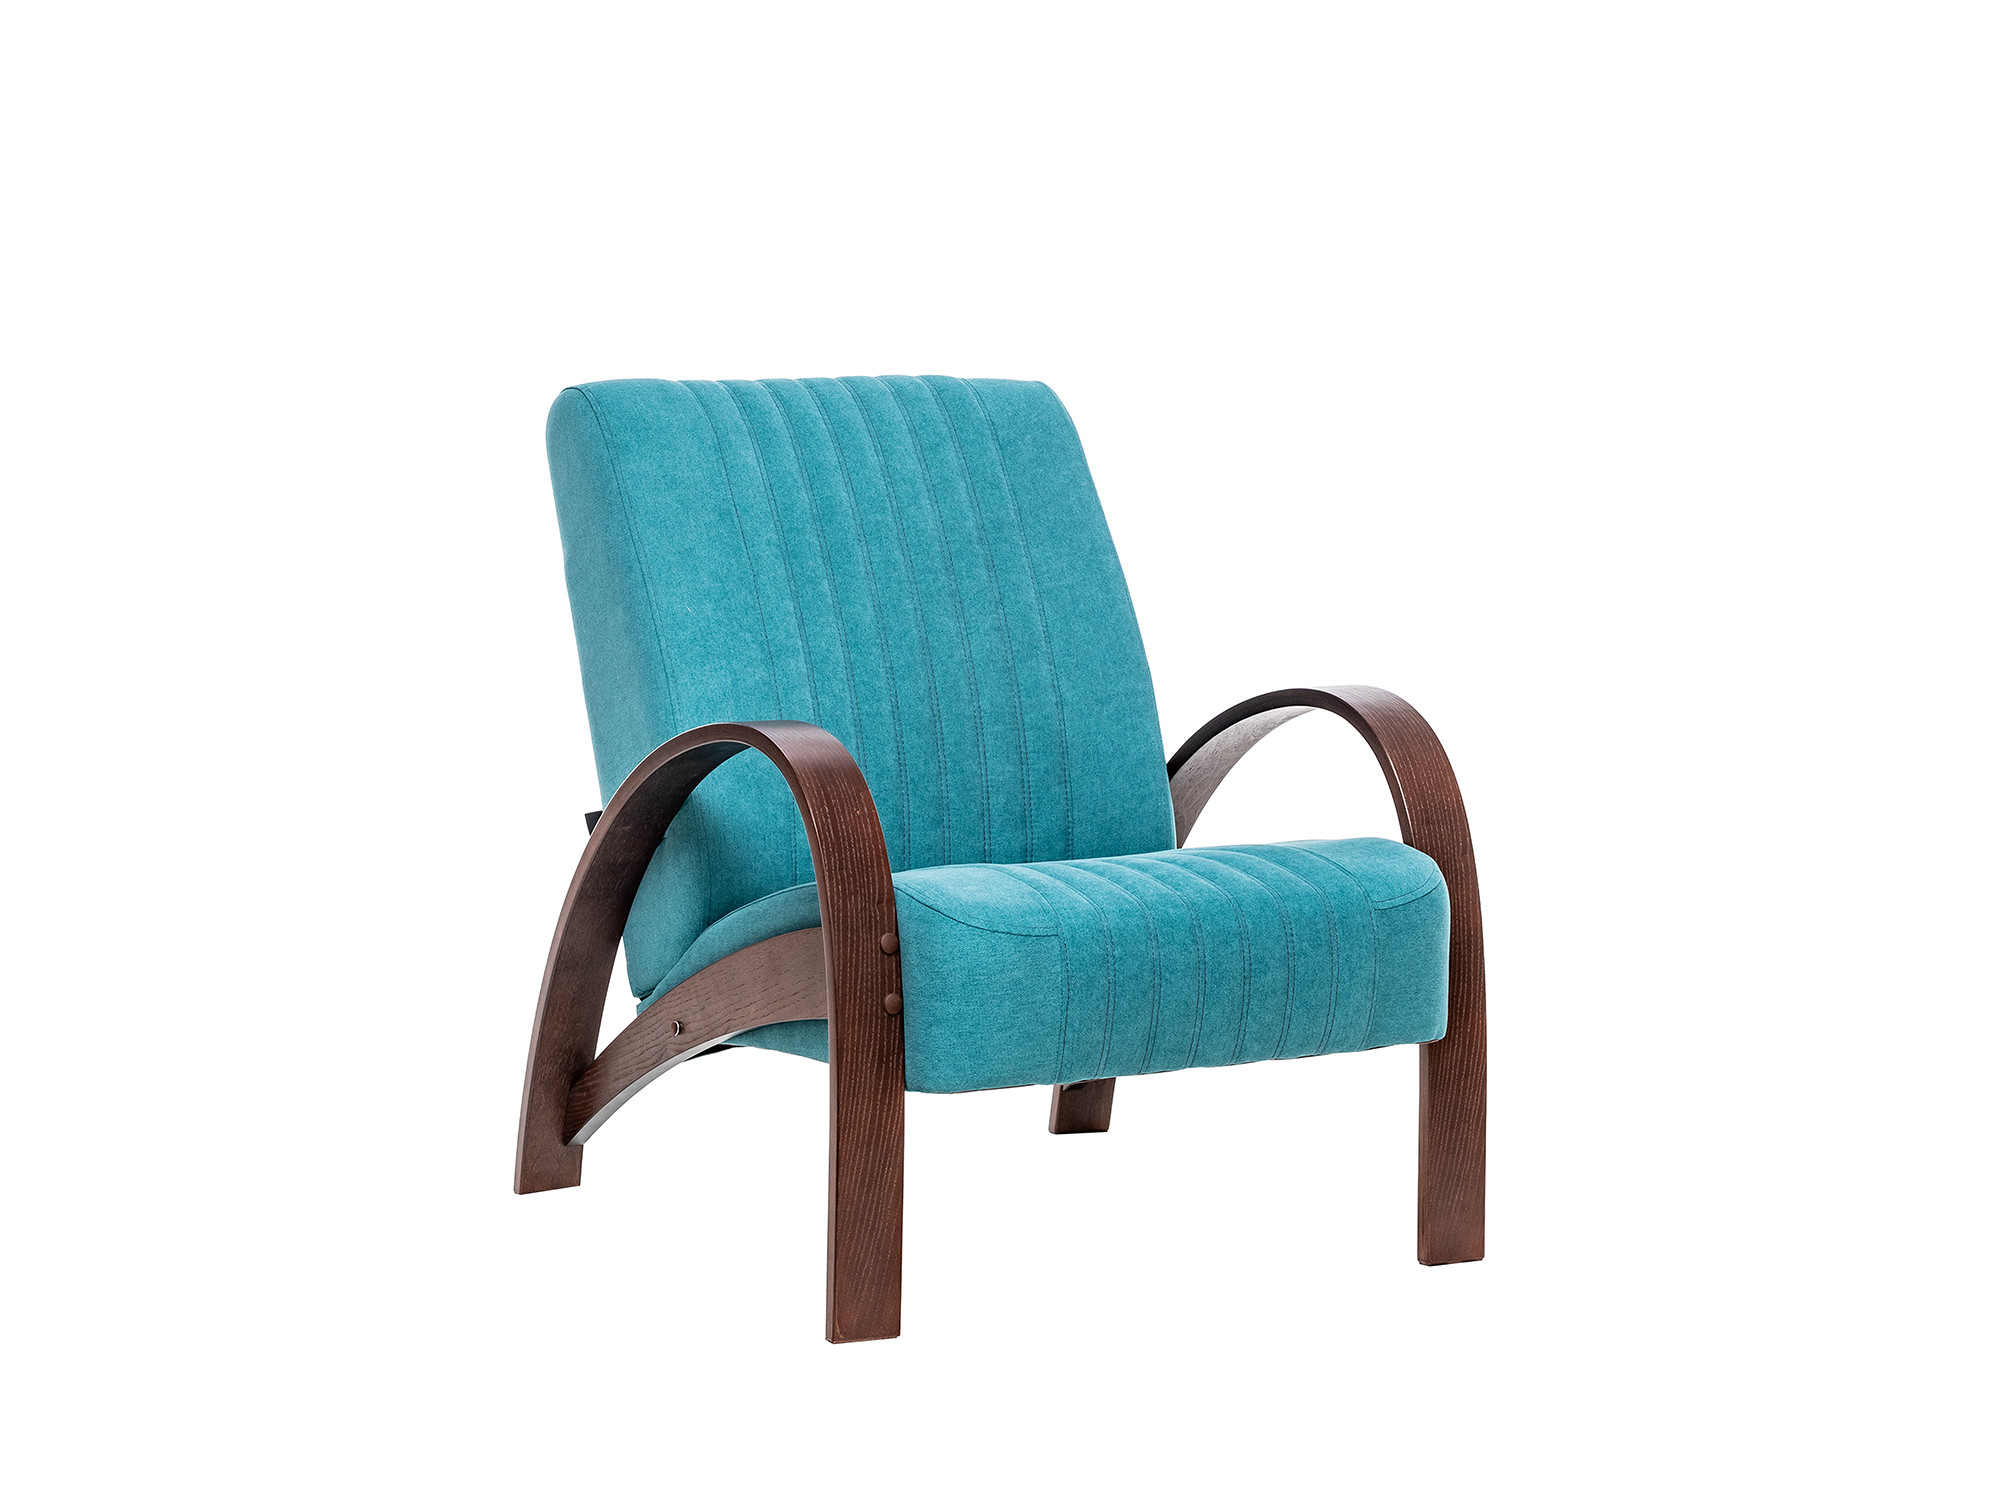 кресло для отдыха модель 61 mebelvia mango 002 экокожа берёзовая фанера Кресло для отдыха Модель S7 Люкс MebelVia Soro 86, Ткань Шенилл, облицованная шпоном, Берёзовая фанера